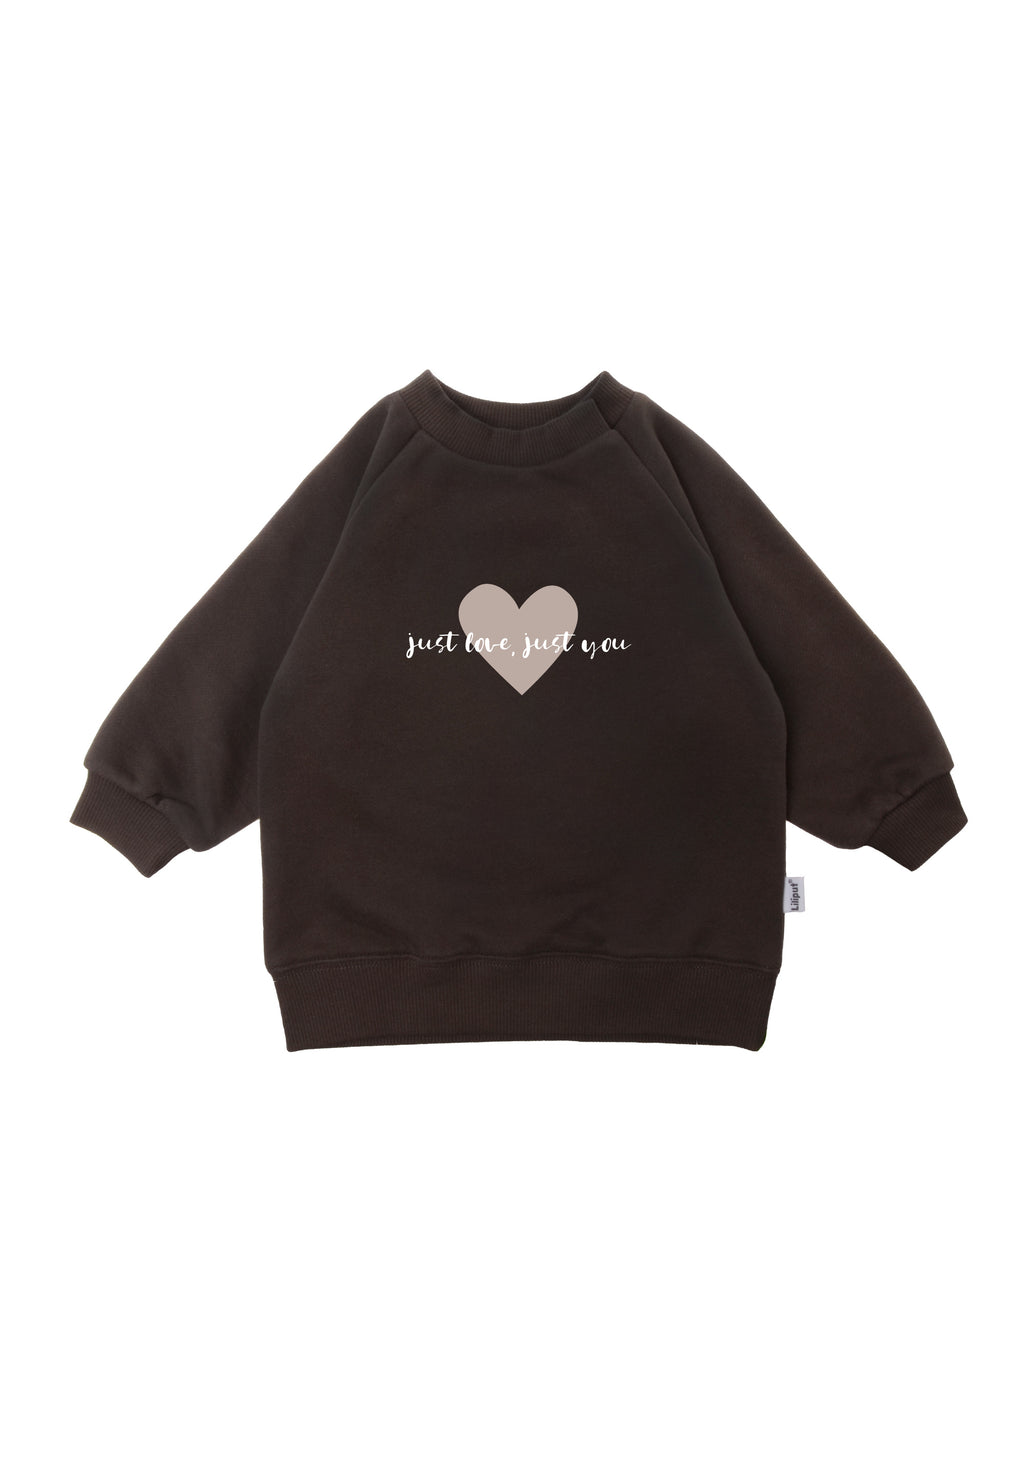 Weiches Sweatshirt in braun mit Print "just love just you".